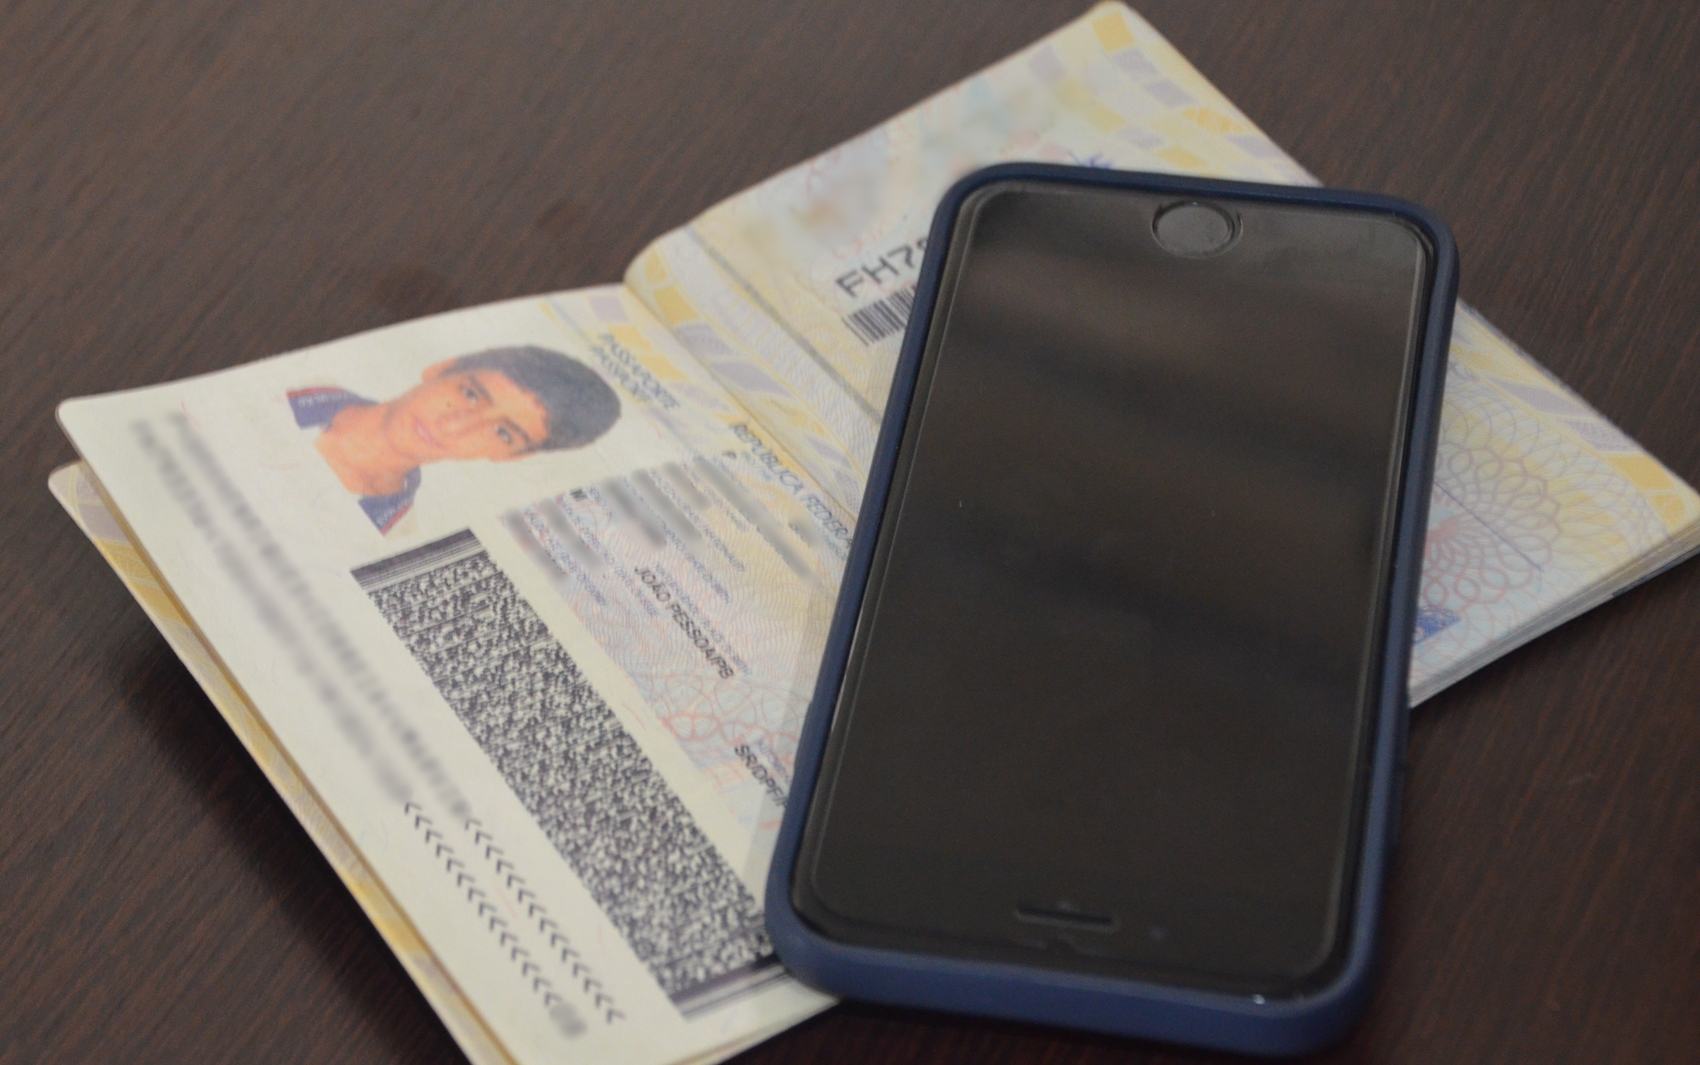 Polícia apreendeu o passaporte e um celular com o suspeito (Foto: Diogo Almeida)